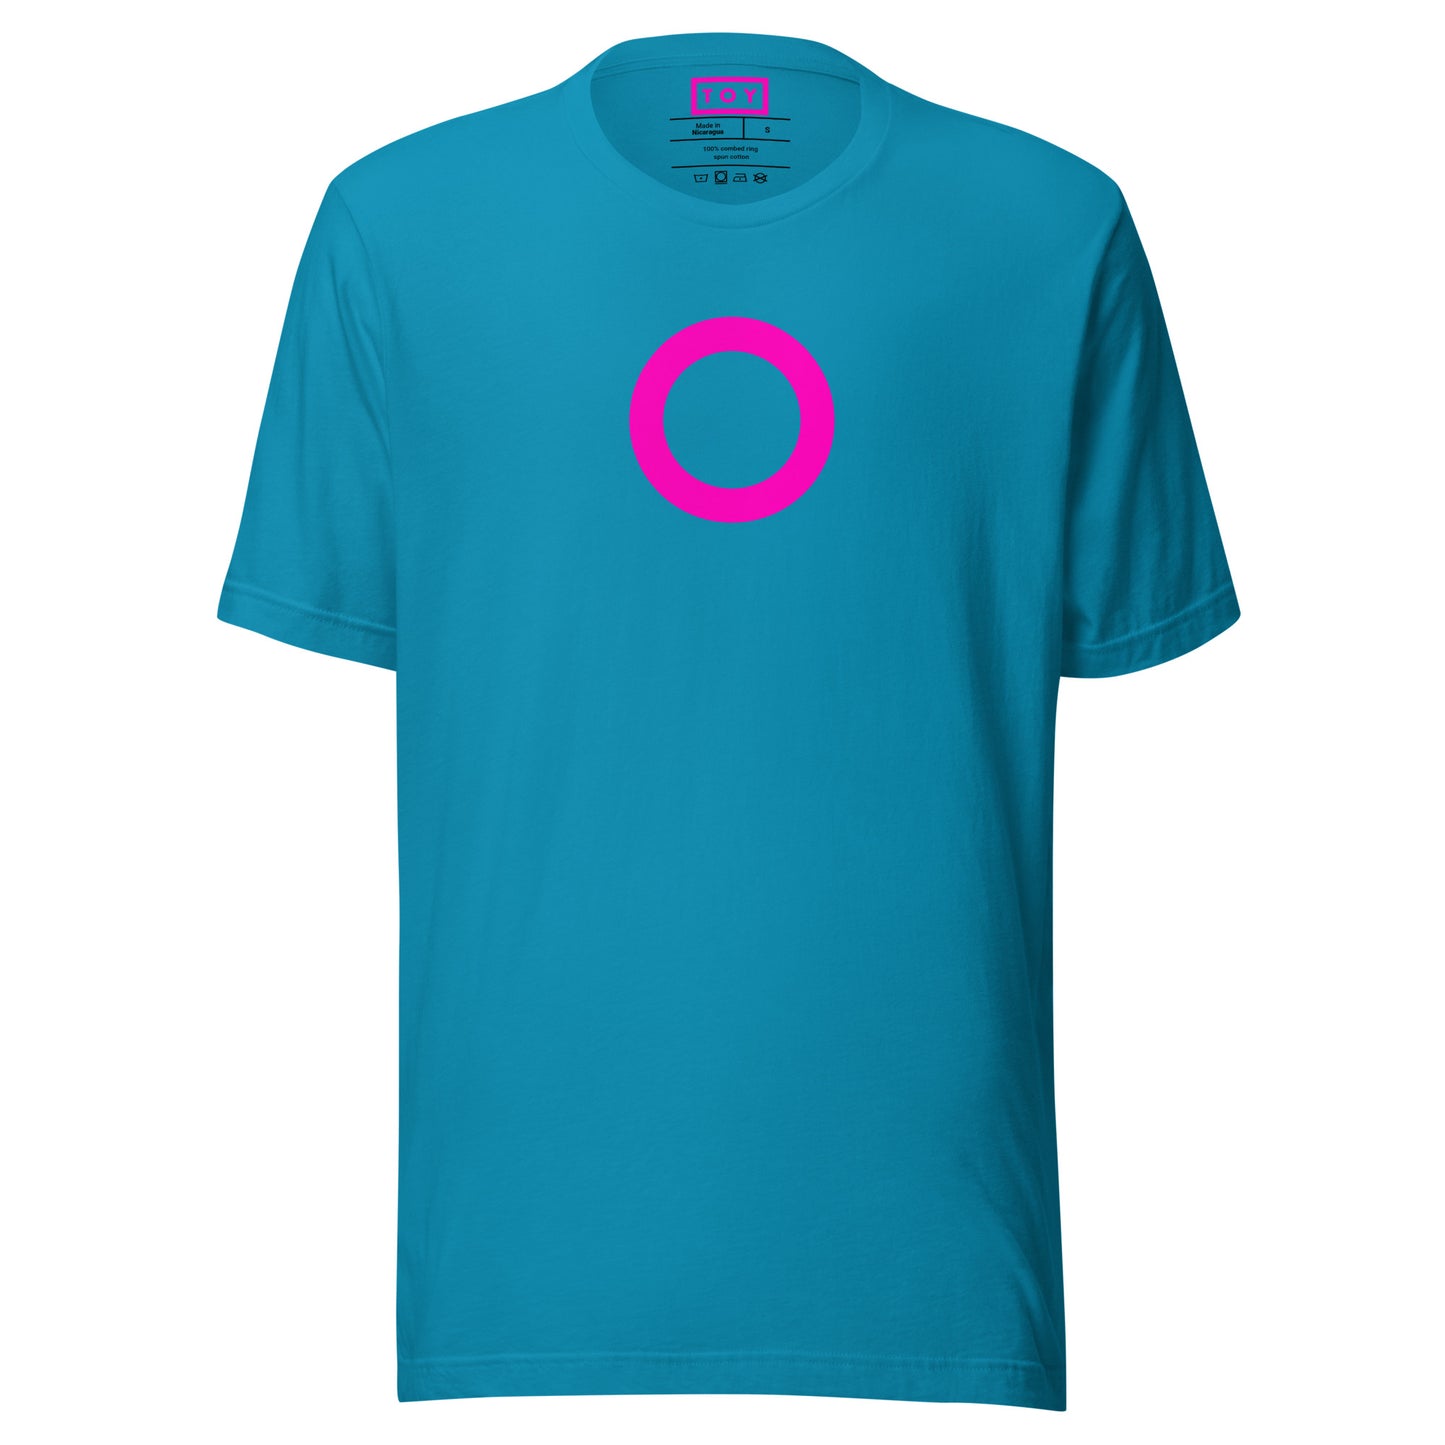 TOY [CIRCLE] Series (Pi) T-shirt